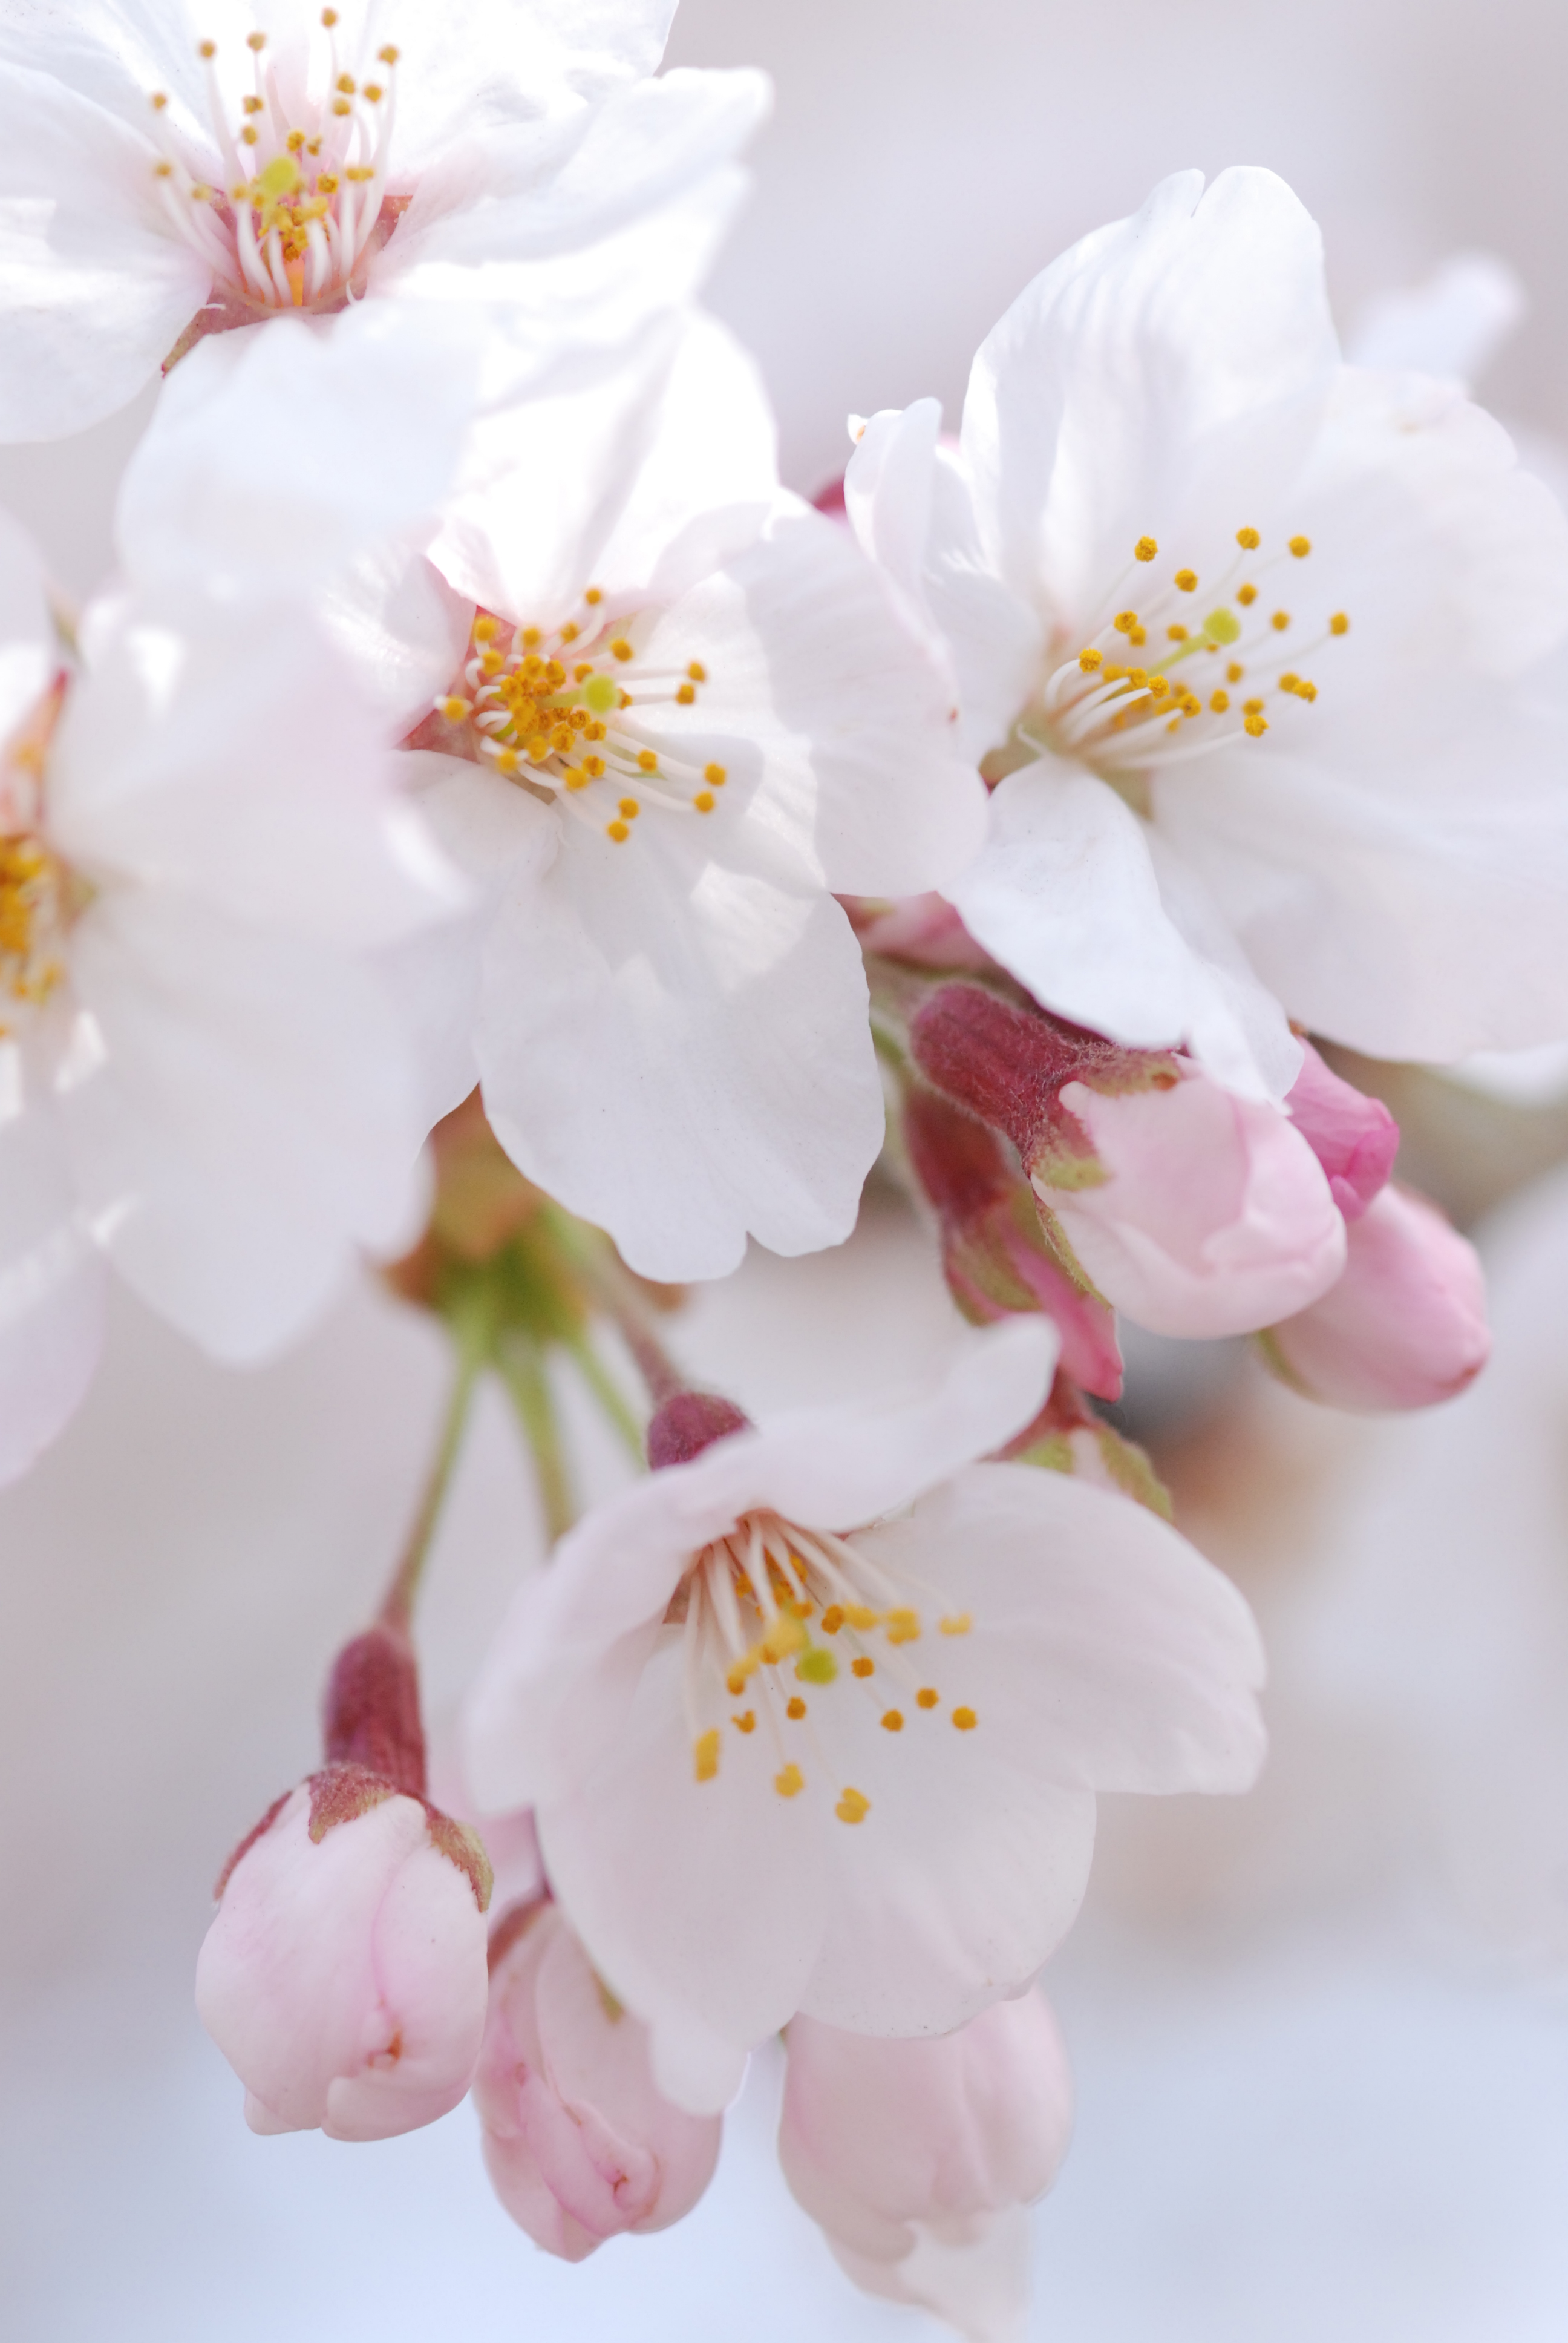 Vol 001 桜の花をアップで撮ってみよう ママカメラマン山ちゃんの写真教室 カメラのキタムラ